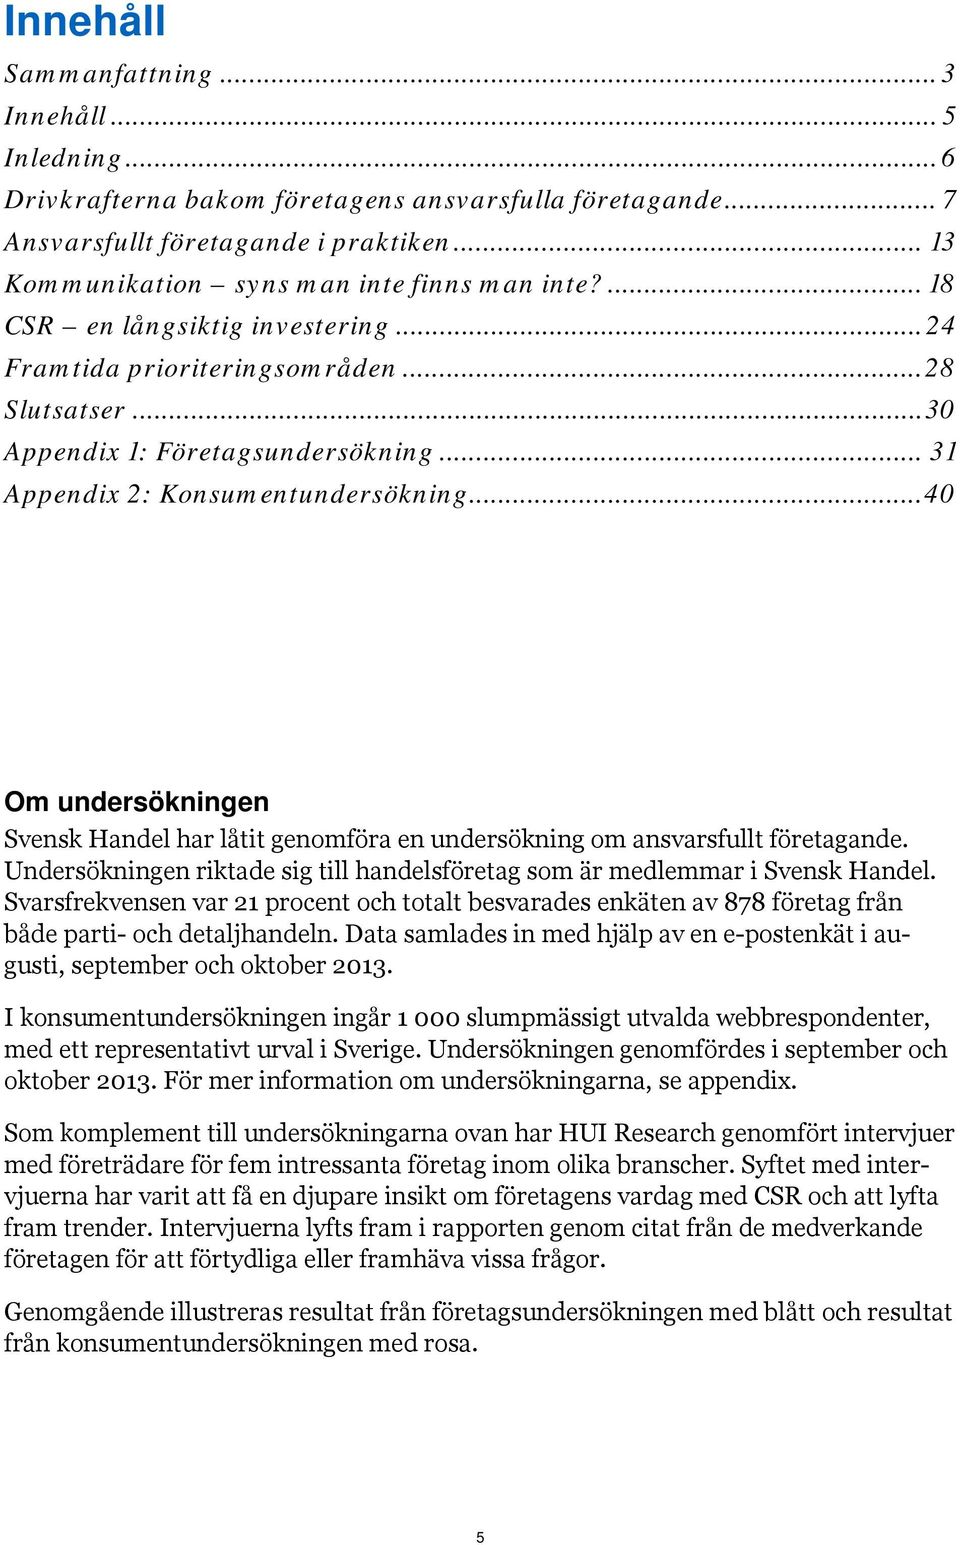 .. 31 Appendix 2: Konsumentundersökning... 40 Om undersökningen Svensk Handel har låtit genomföra en undersökning om ansvarsfullt företagande.